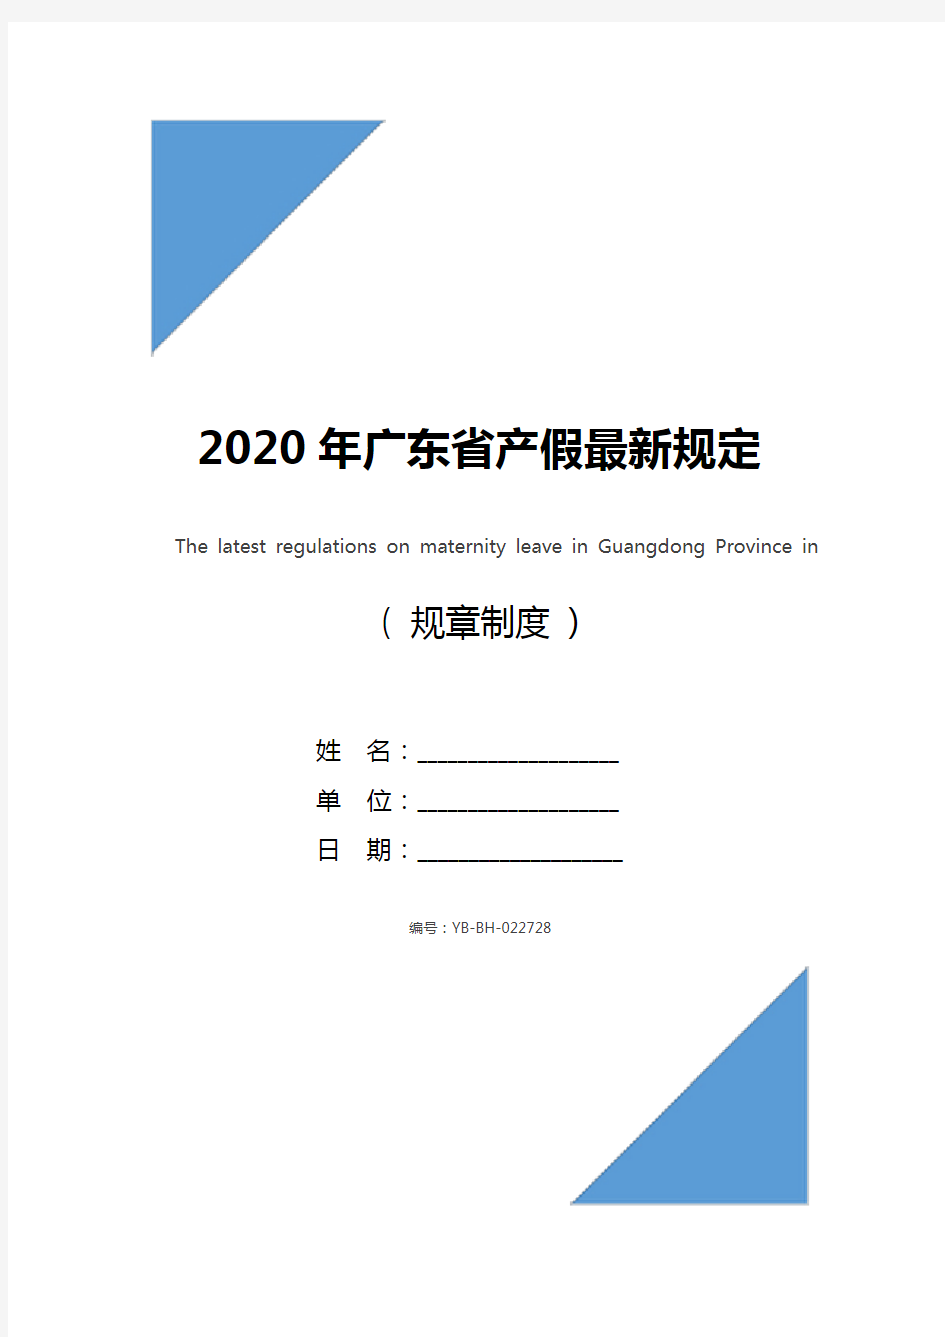 2020年广东省产假最新规定